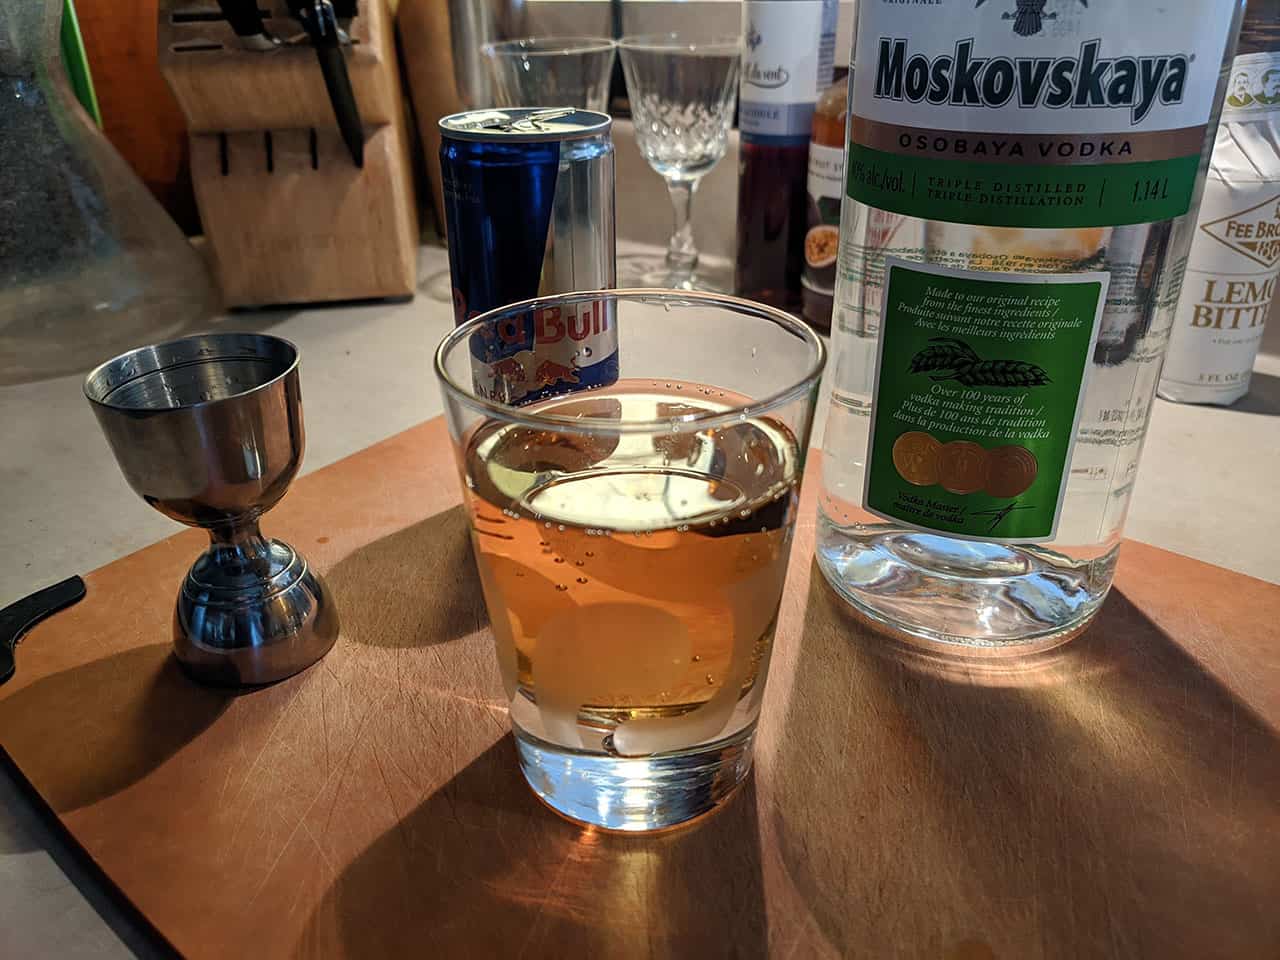 vodka redbull mixed drink